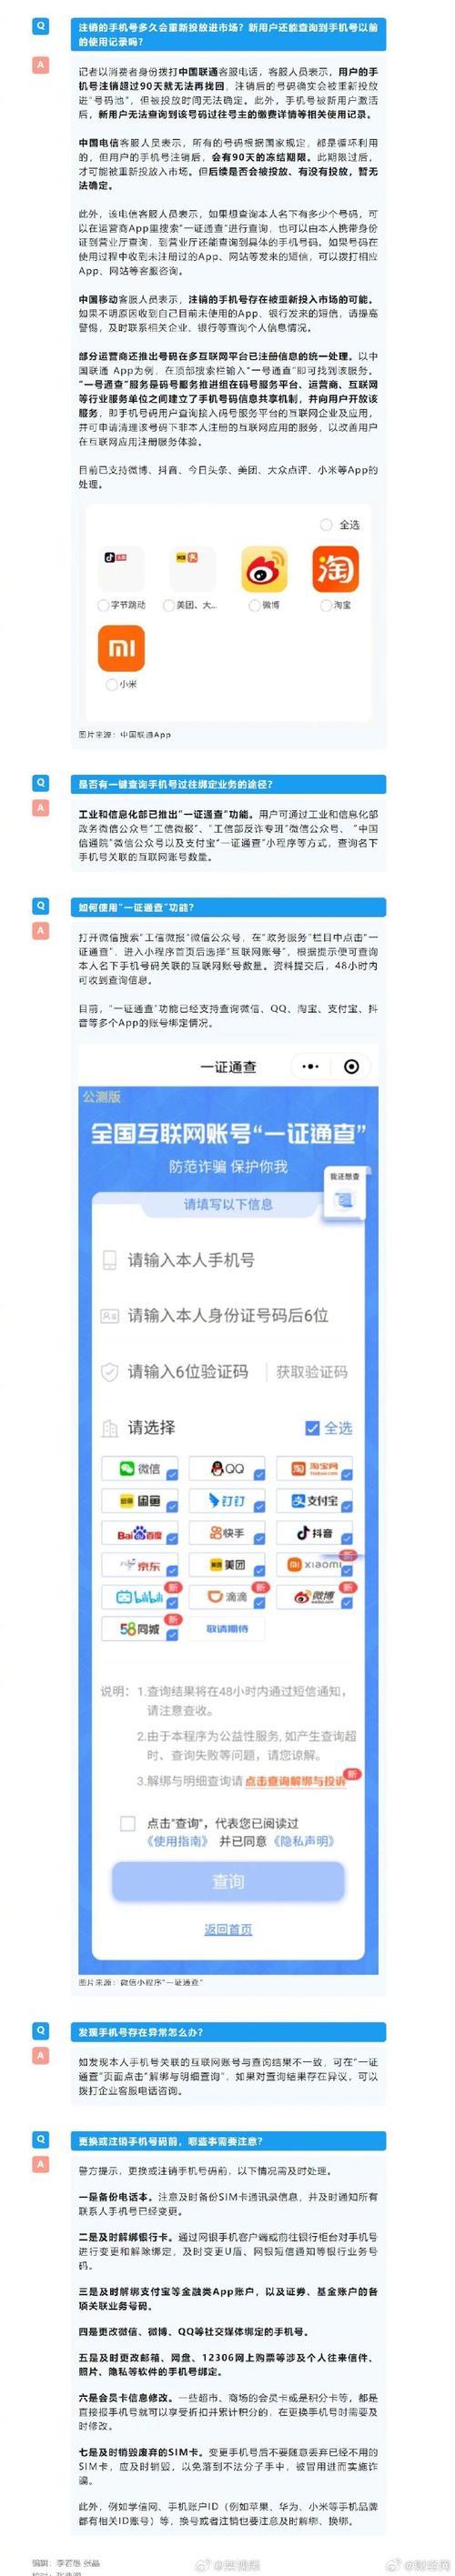 台湾手机运营商指南：选择最适合您的运营商